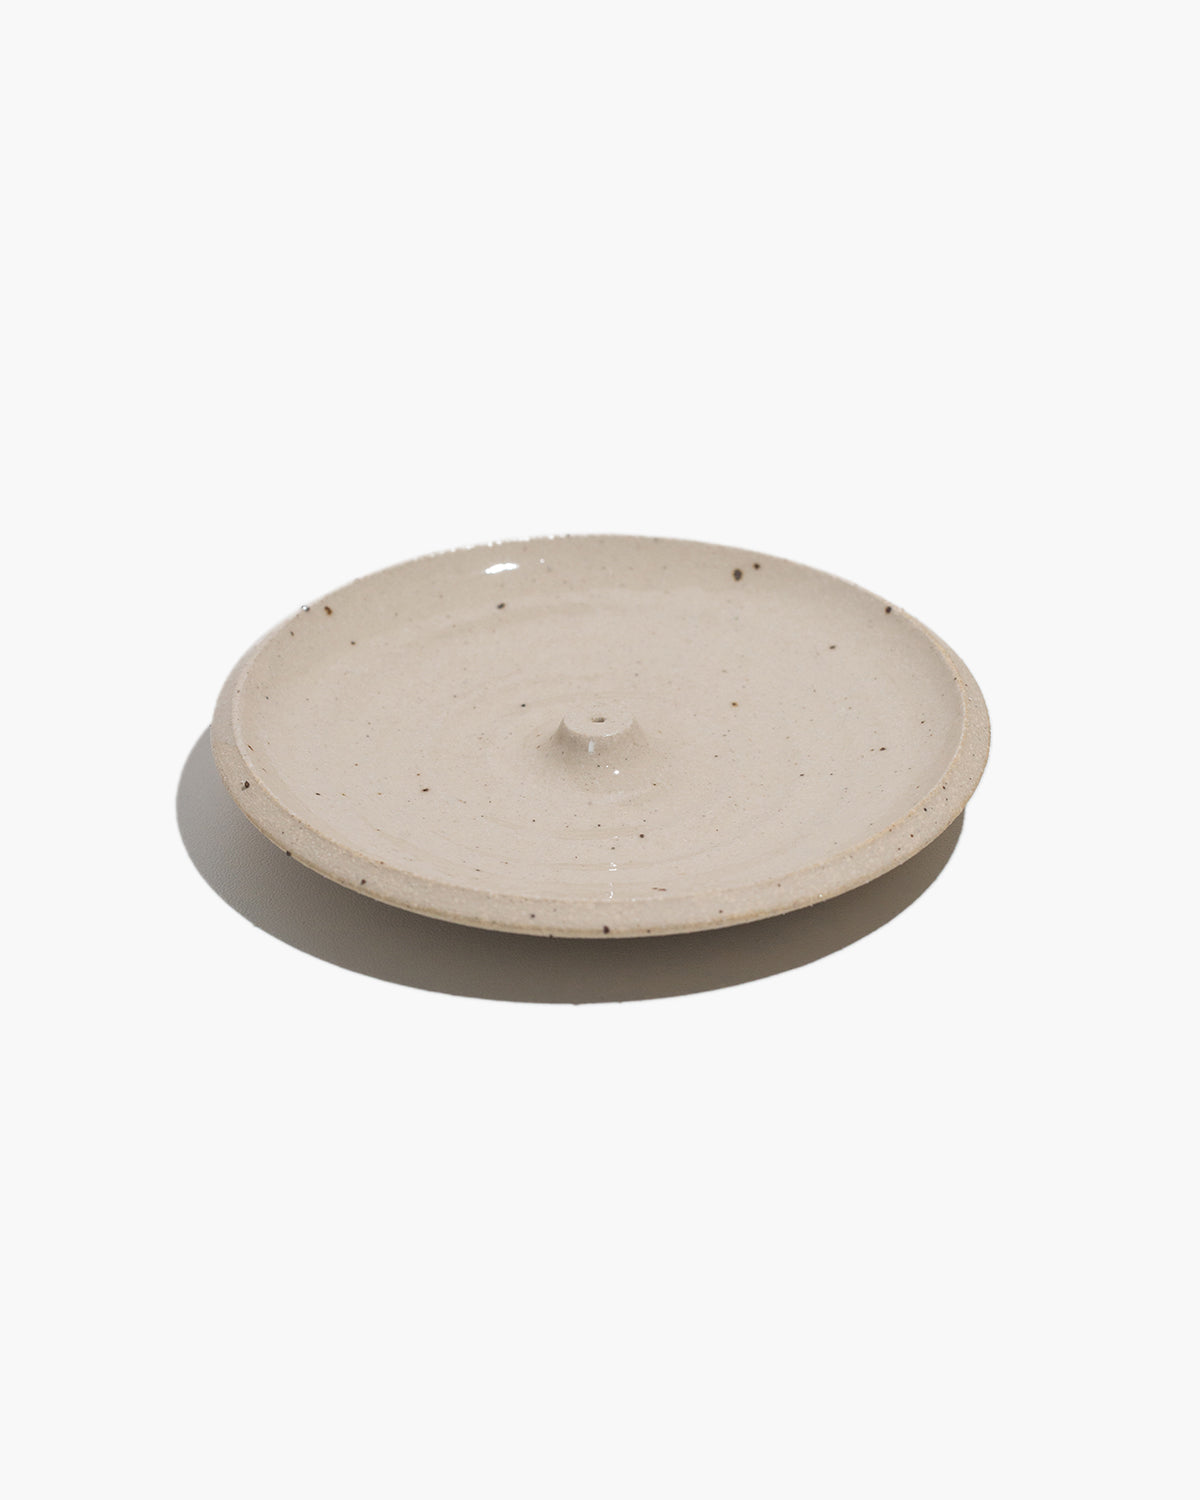 Stoneware Ceramic Incense Holder – Speckled